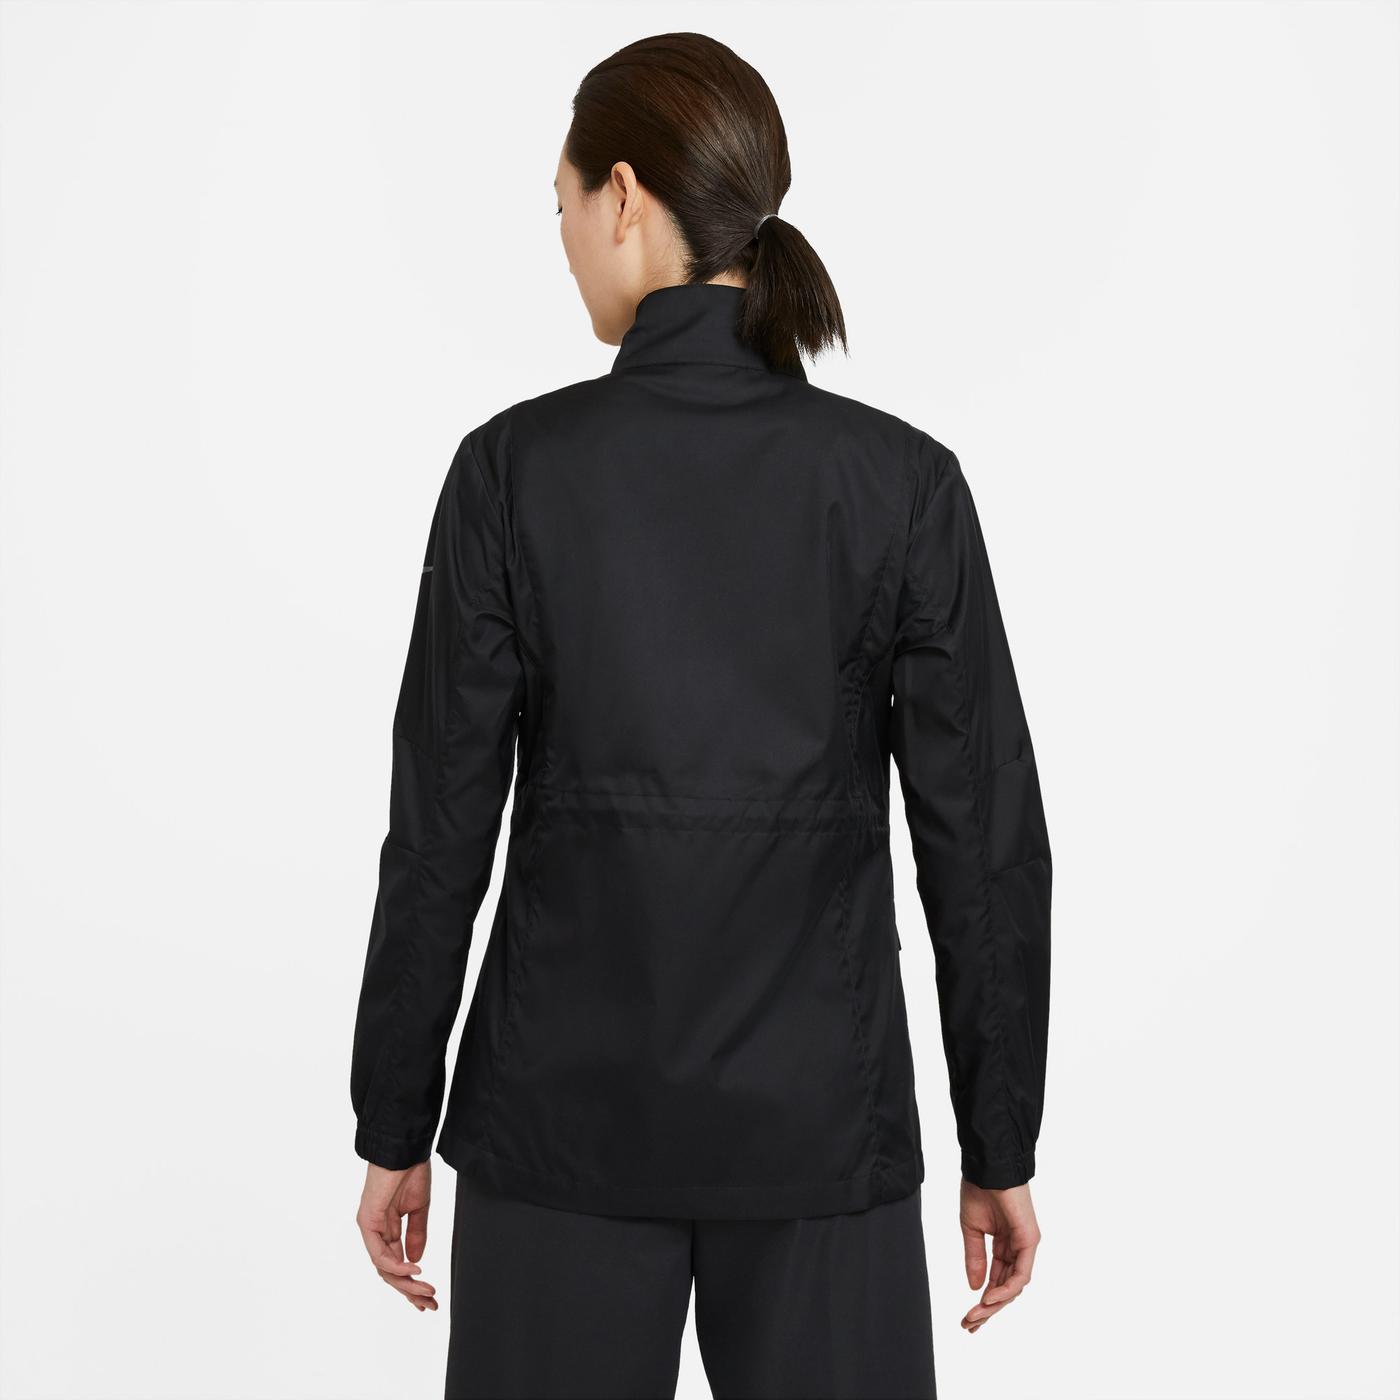 Nike Sportswear Kadın Siyah Ceket